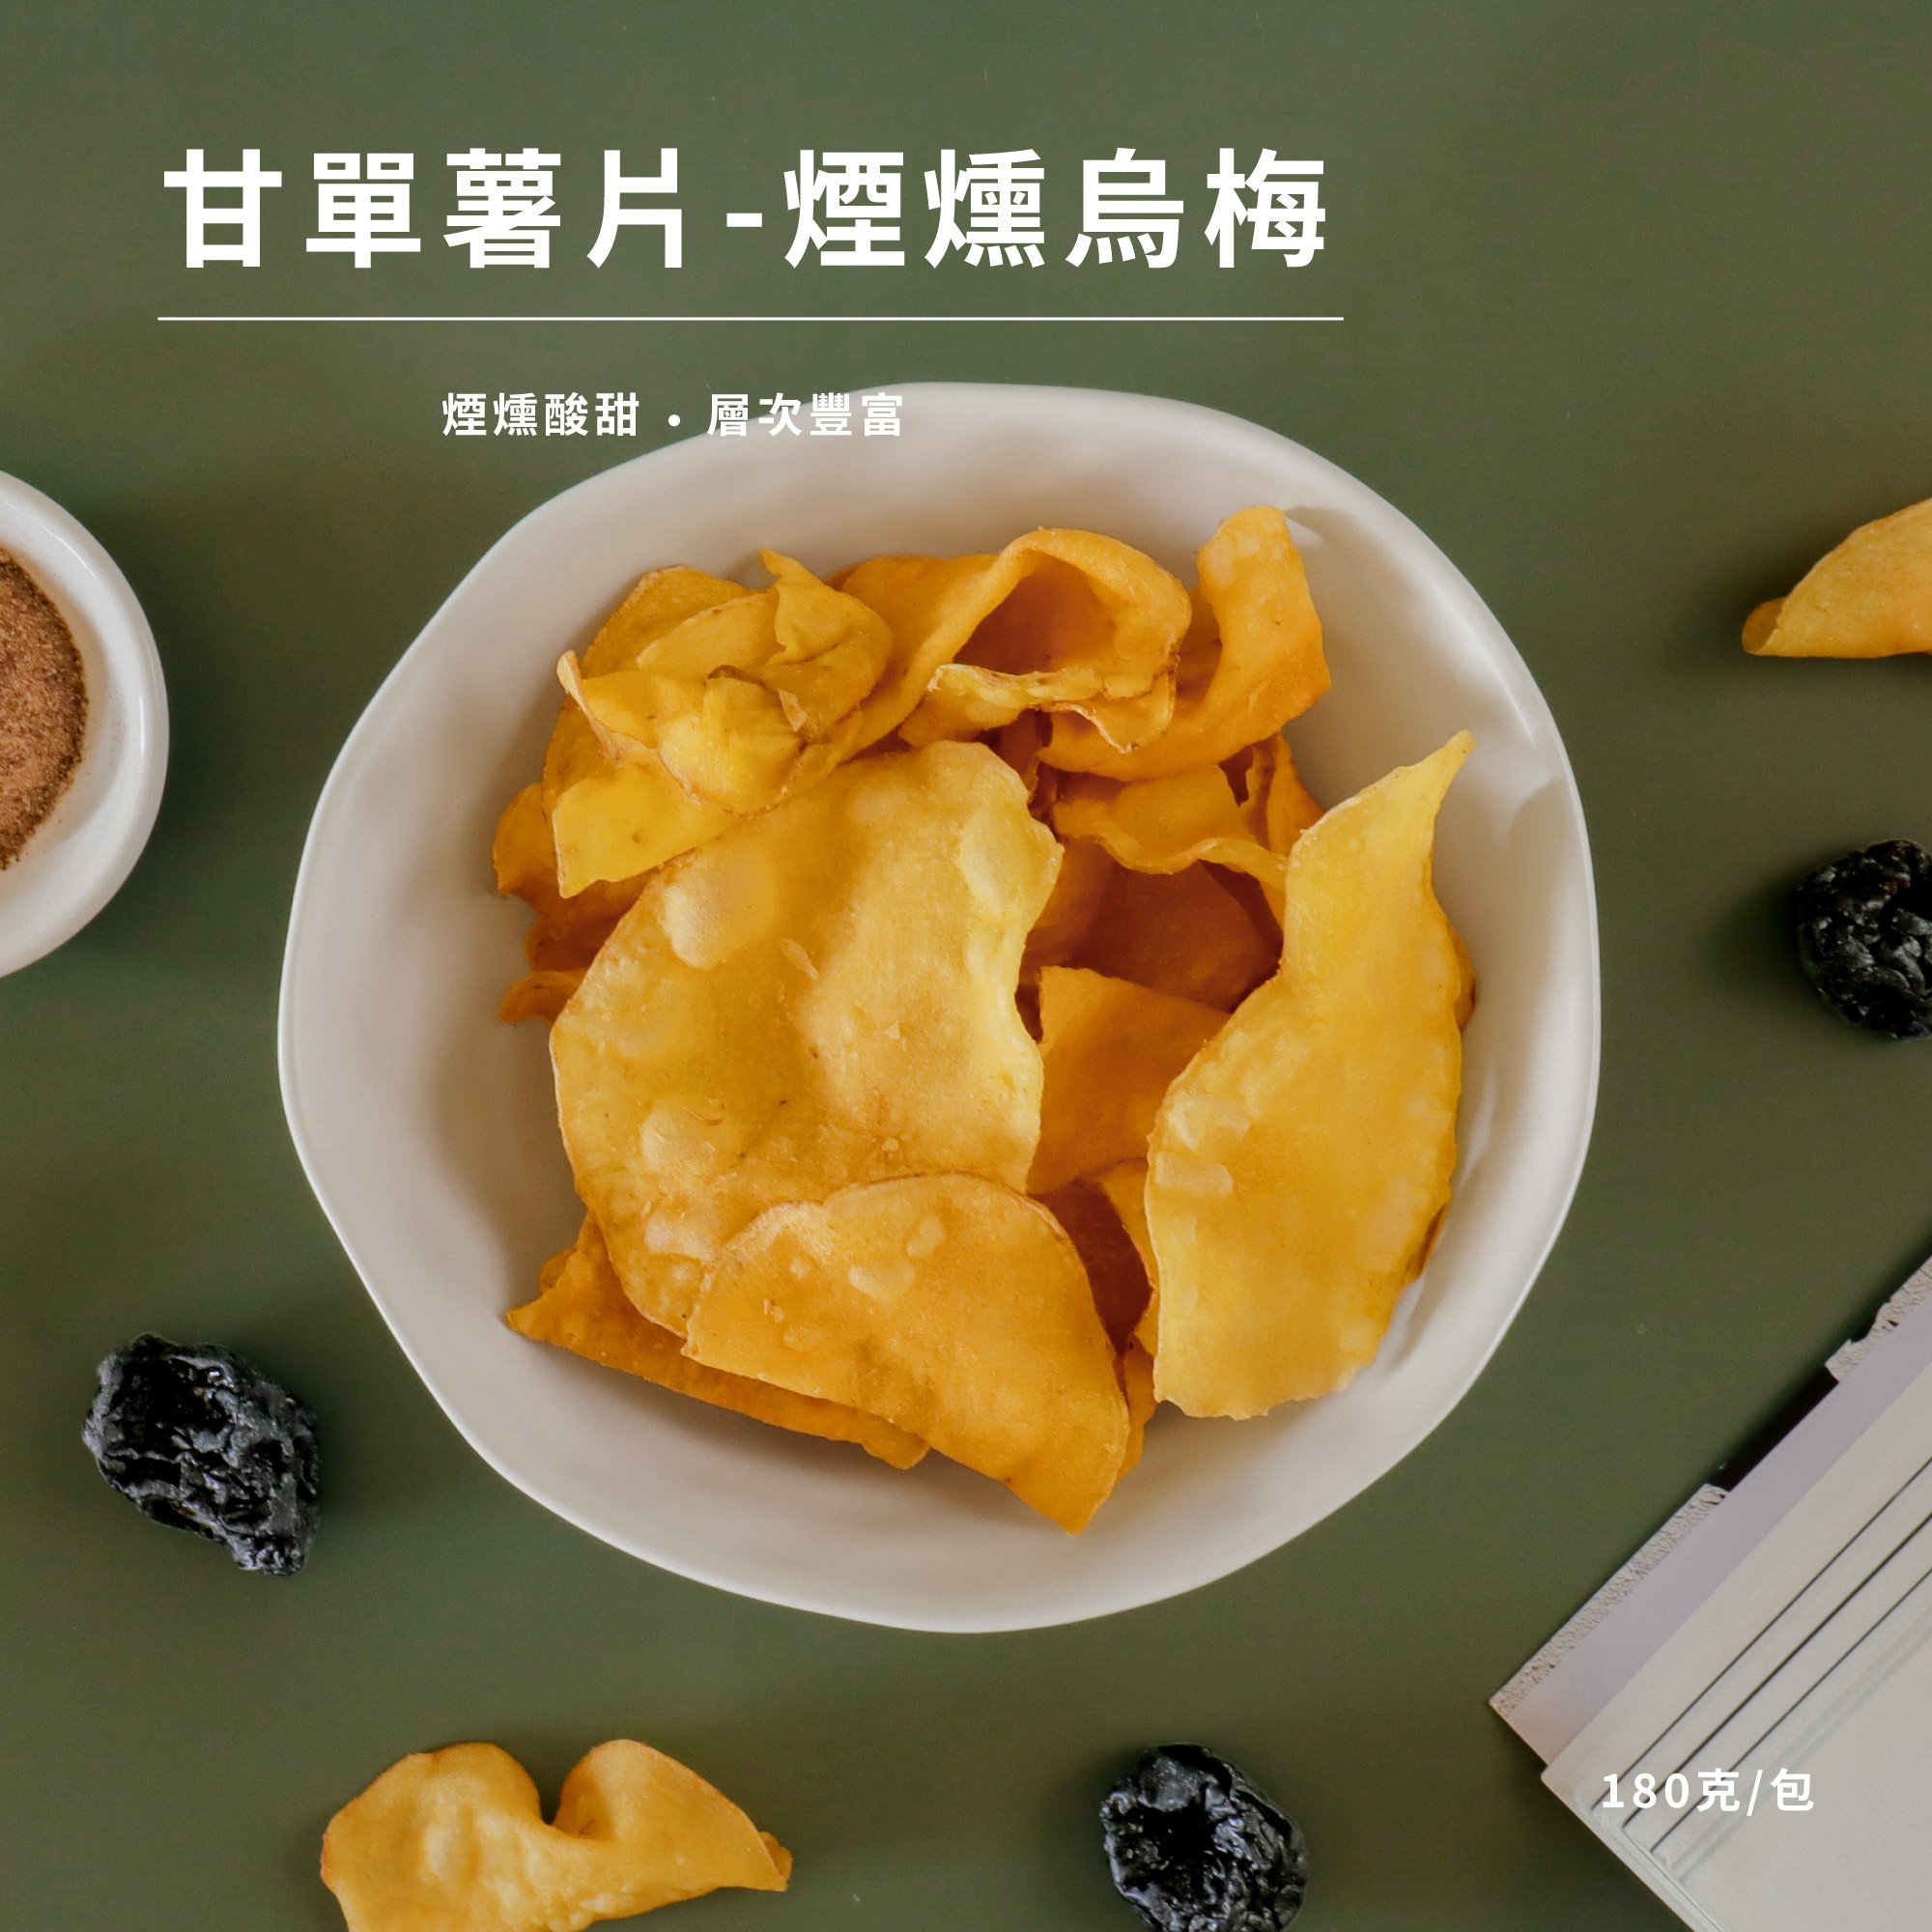 【常溫休閒小食】甘單薯片- 煙燻烏梅 150克/包